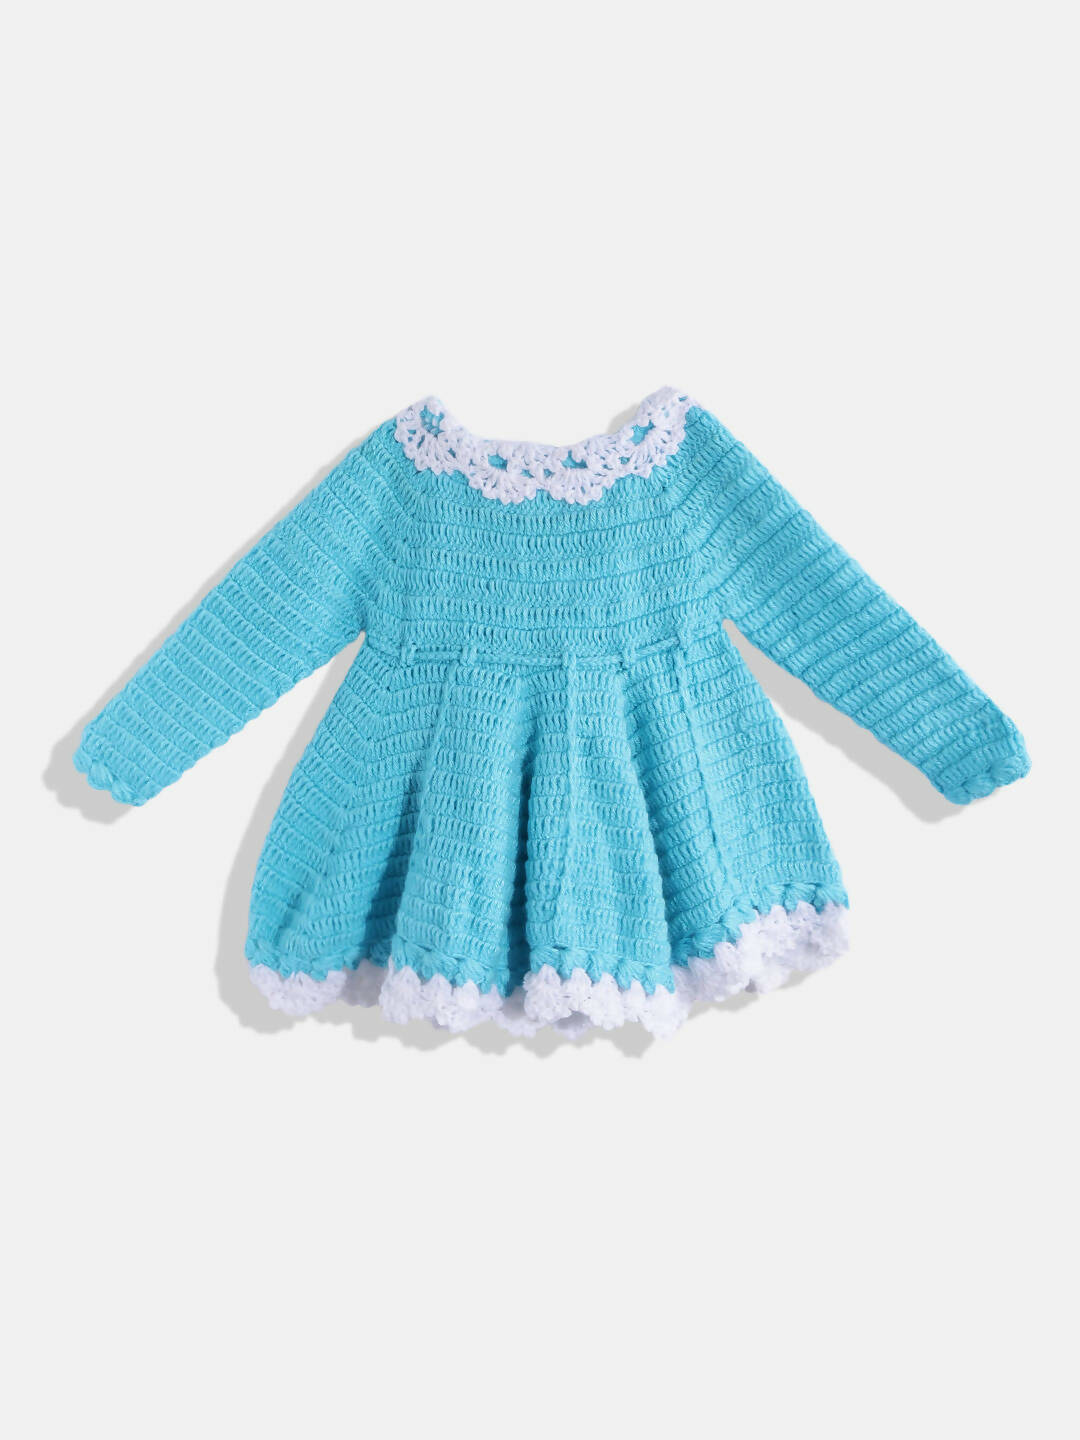 Chutput Kids Woollen Hand Knitted Full Sleeves Flower Work Dress - Blue - Distacart